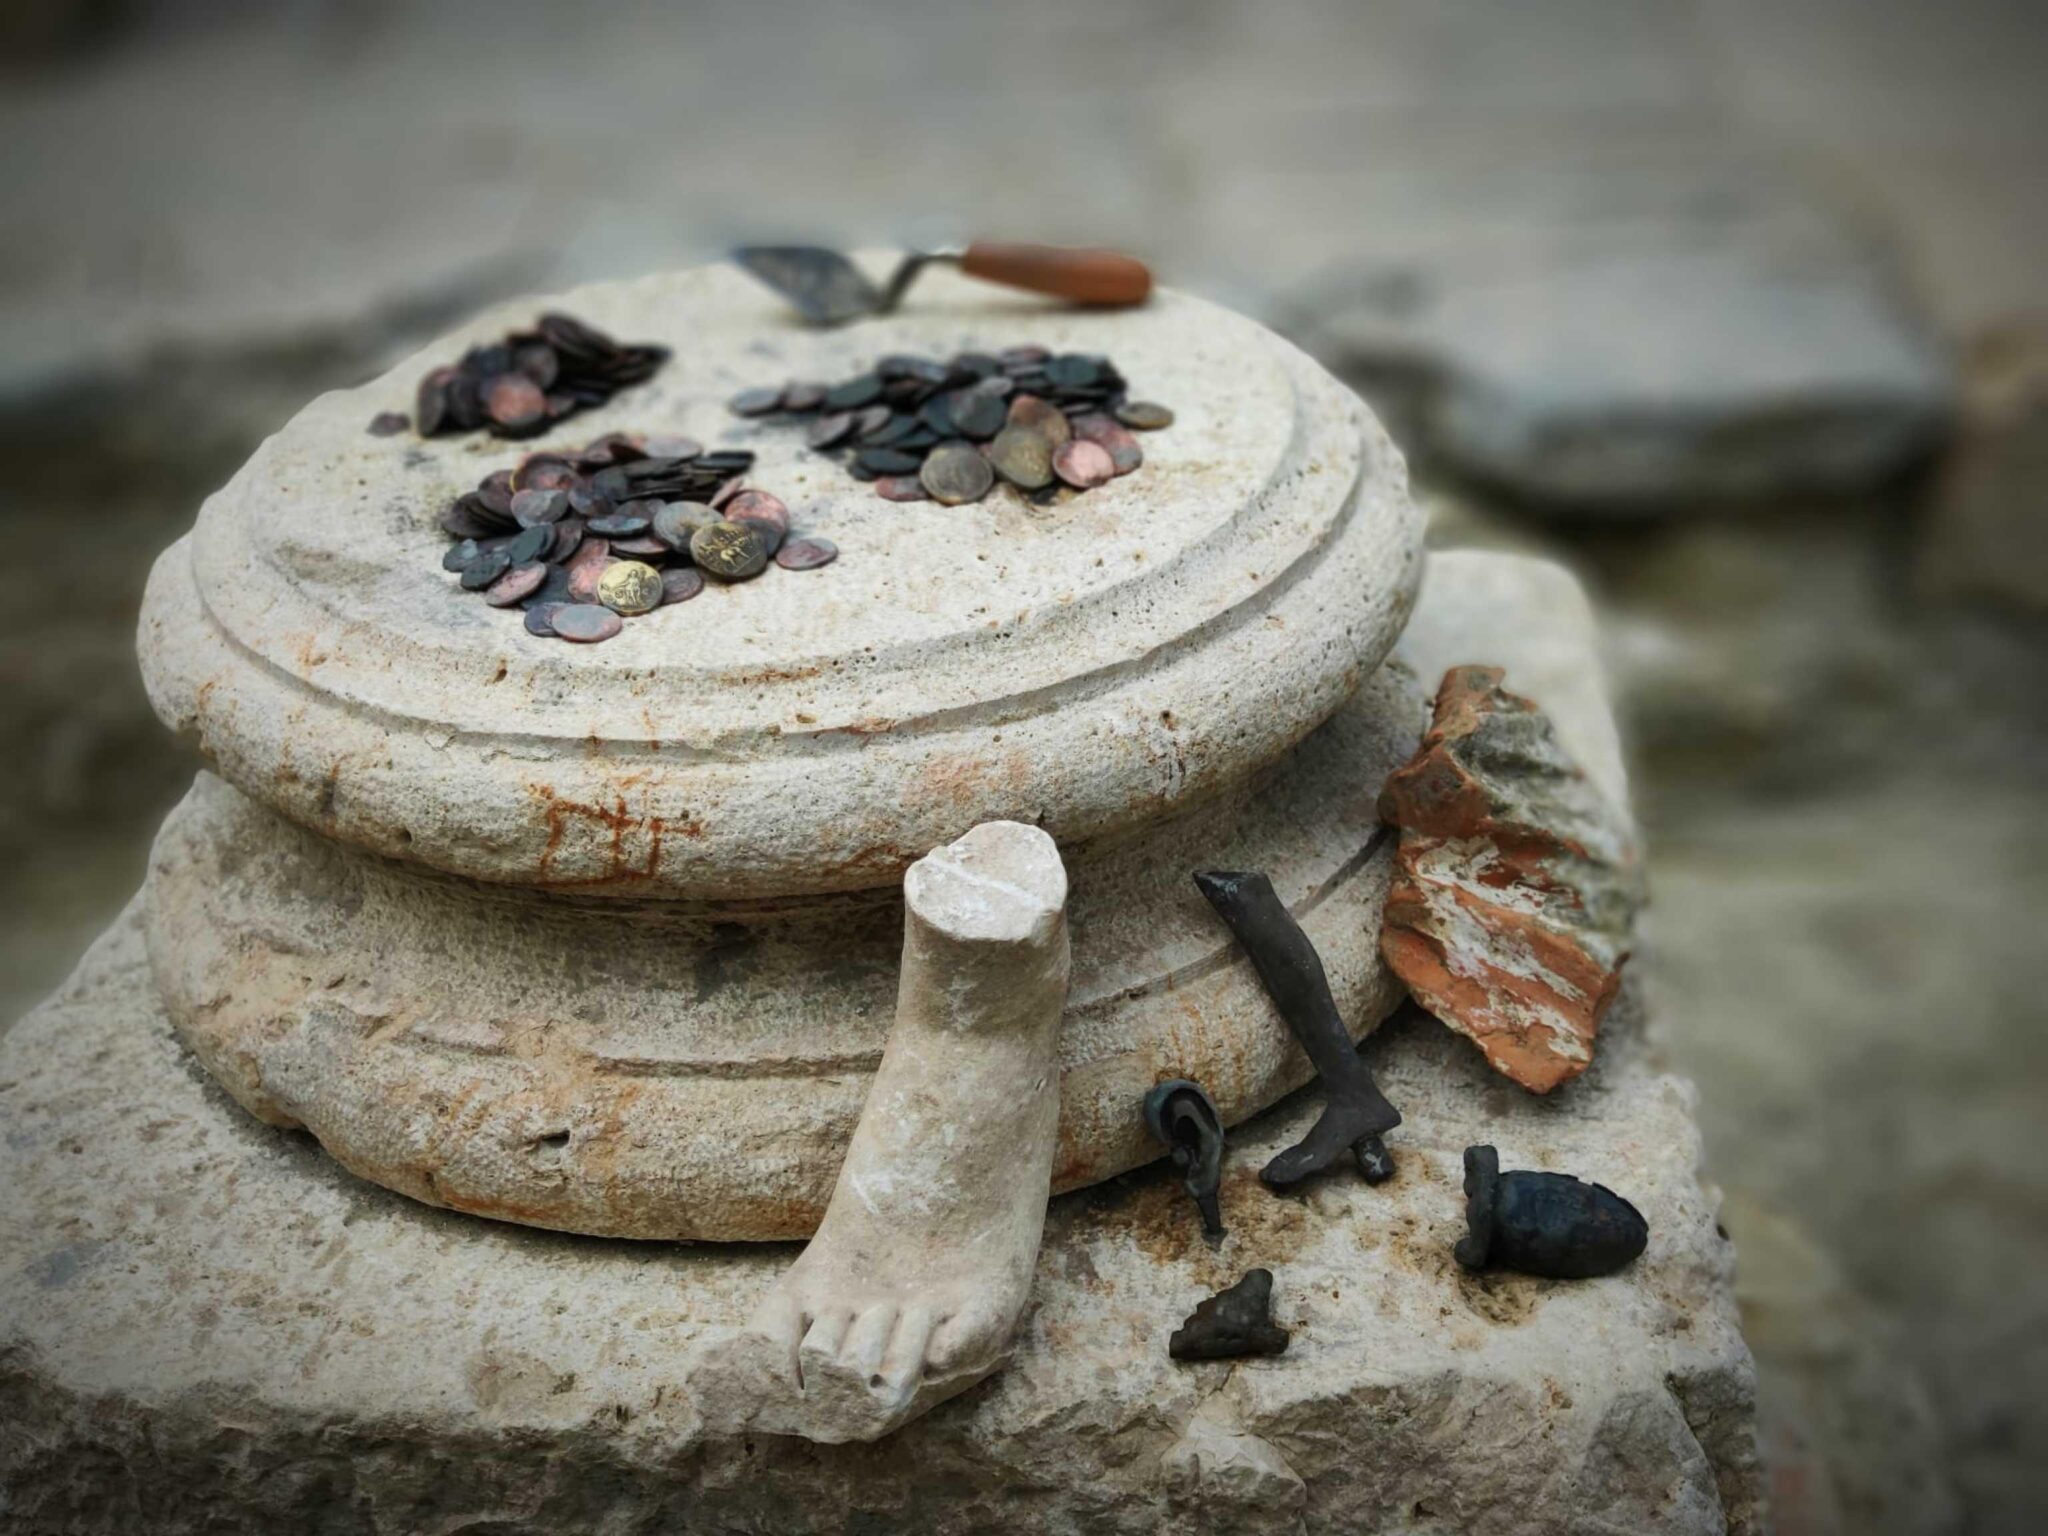 Bronze uterus, mint coins found at sacred baths